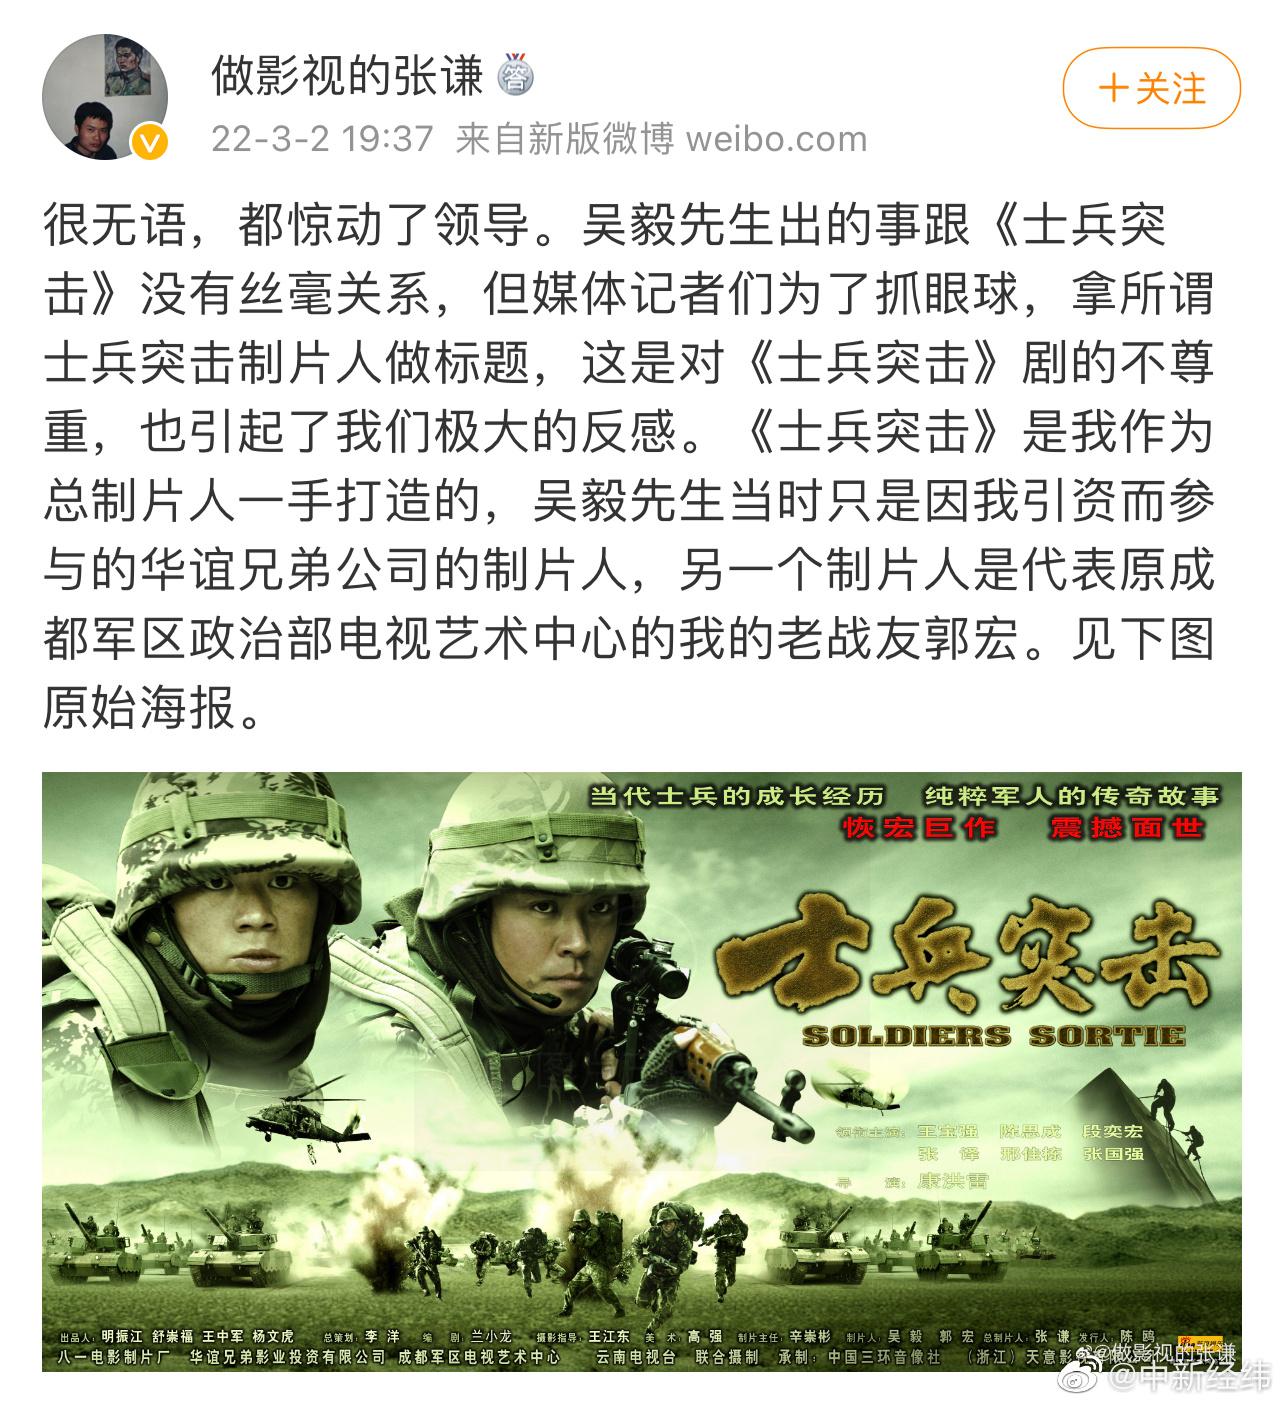 总制片人称吴毅被捕与士兵突击无关